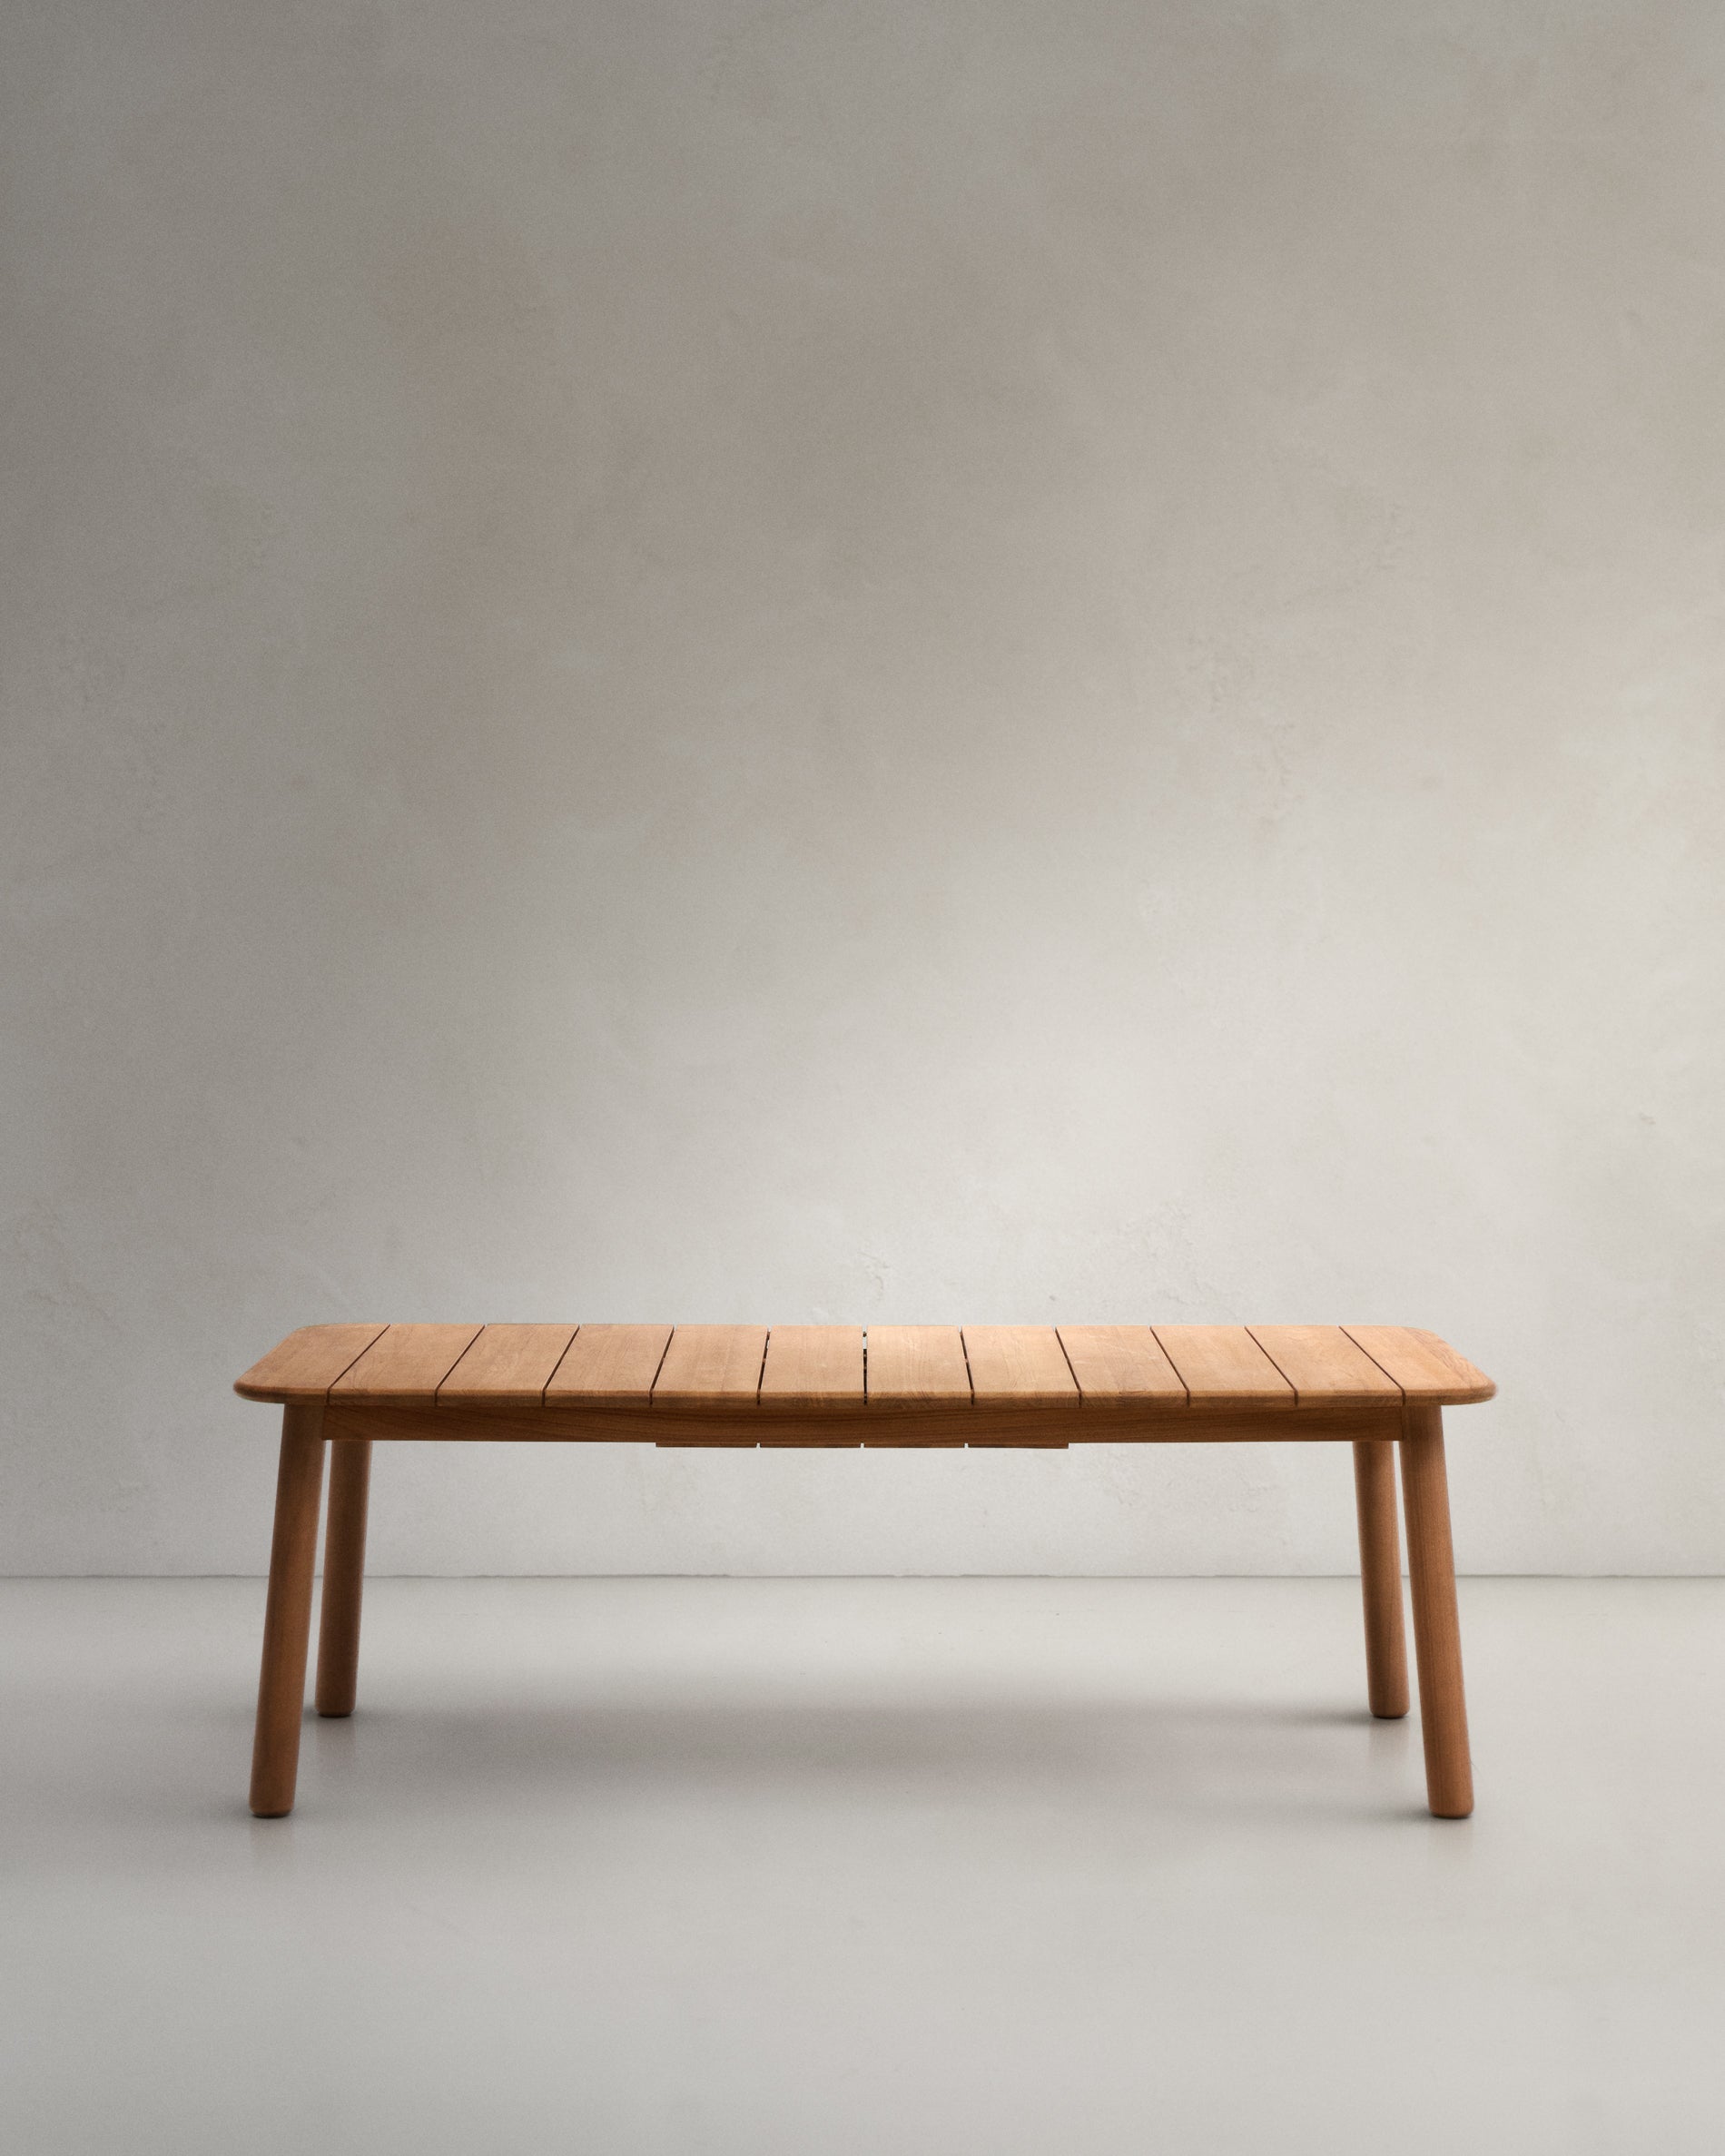 Turqueta kihúzható asztal tömör teakfából, 220 (294) x 100 cm, 100% FSC